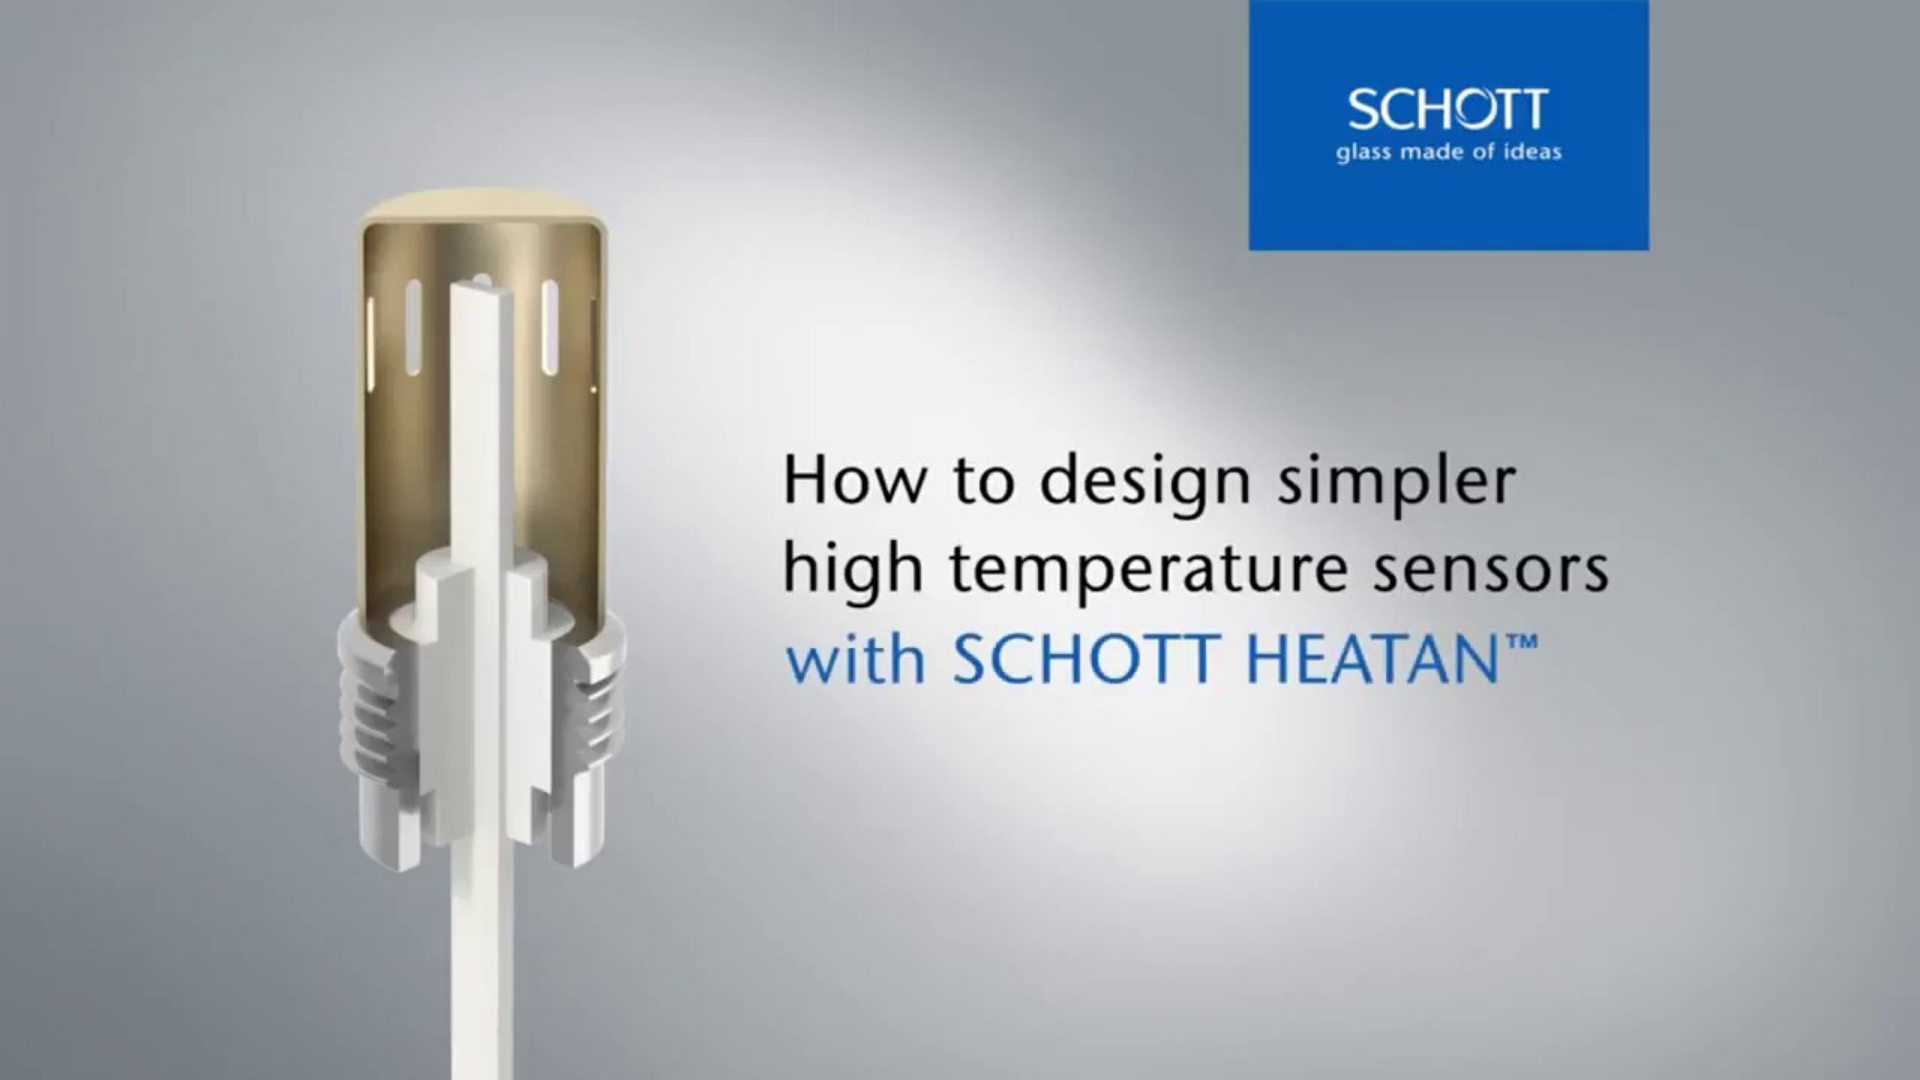 Cliquez pour découvrir comment les traversées de capteur haute température SCHOTT HEATAN™ peuvent être personnalisées en fonction des exigences spécifiques